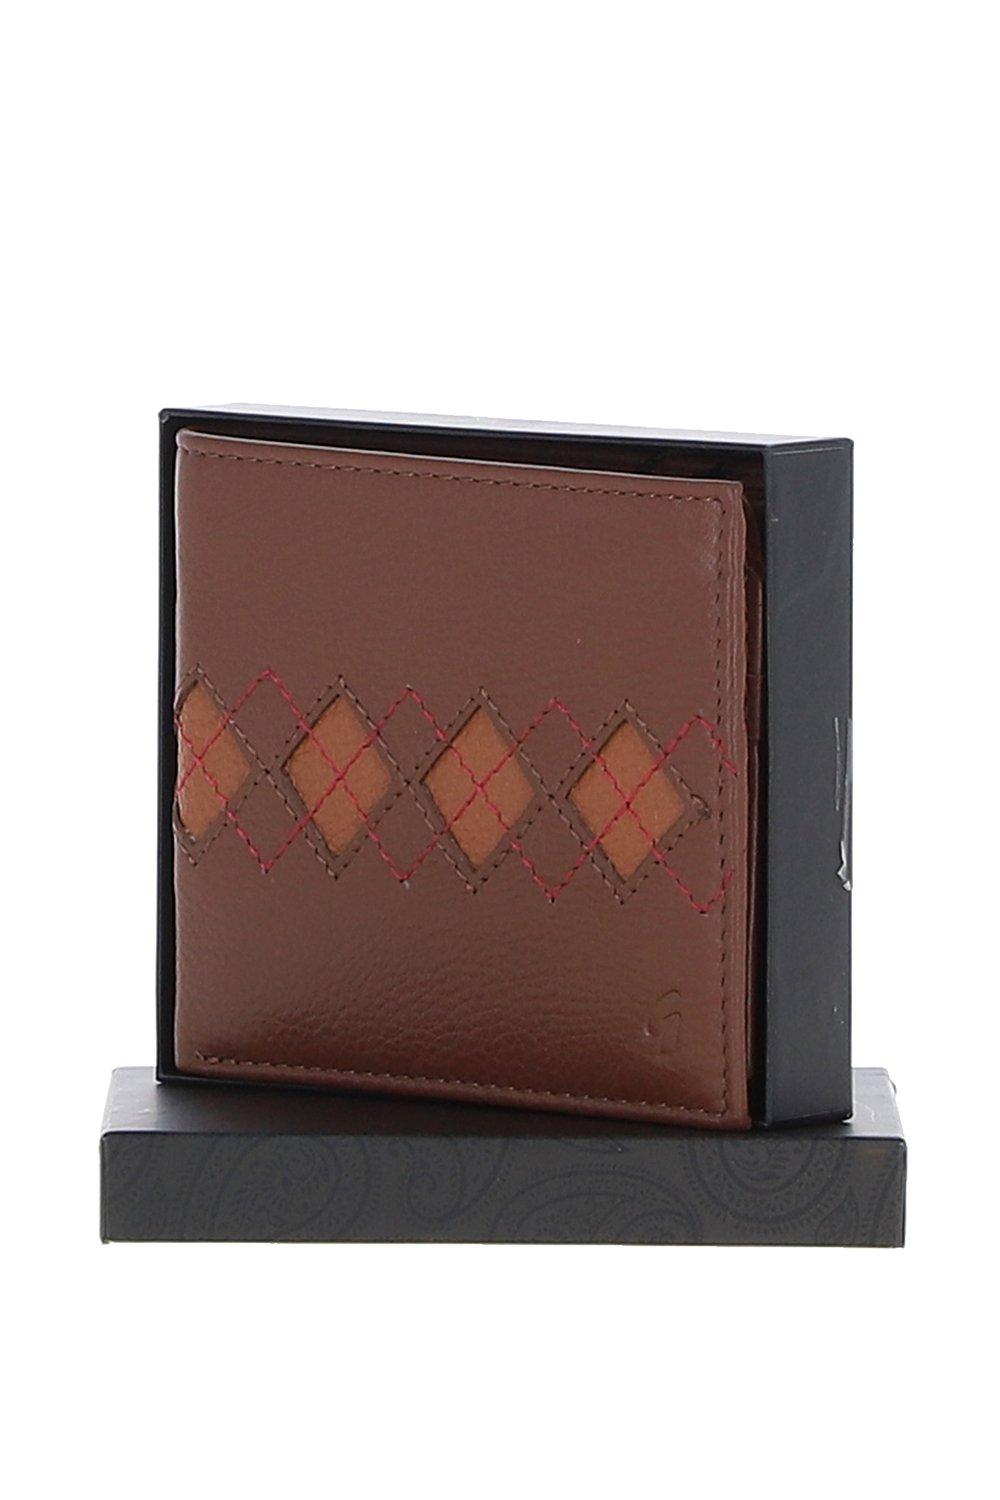 Классический кошелек двойного сложения на 11 карт из натуральной кожи '147' GABICCI, коричневый